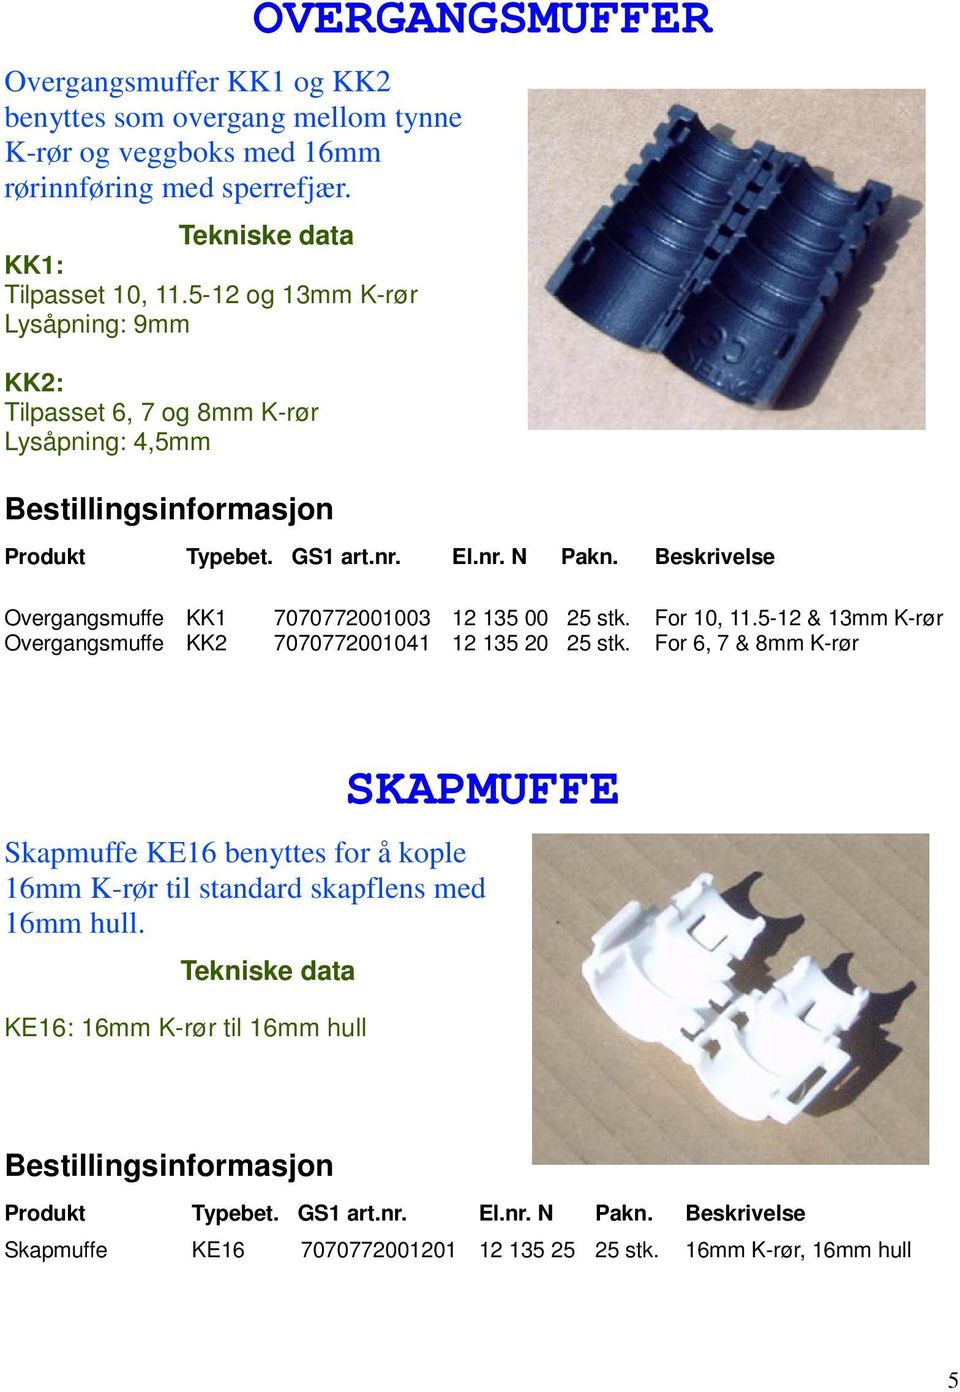 For 10, 11.5-12 & 13mm K-rør Overgangsmuffe KK2 7070772001041 12 135 20 25 stk.